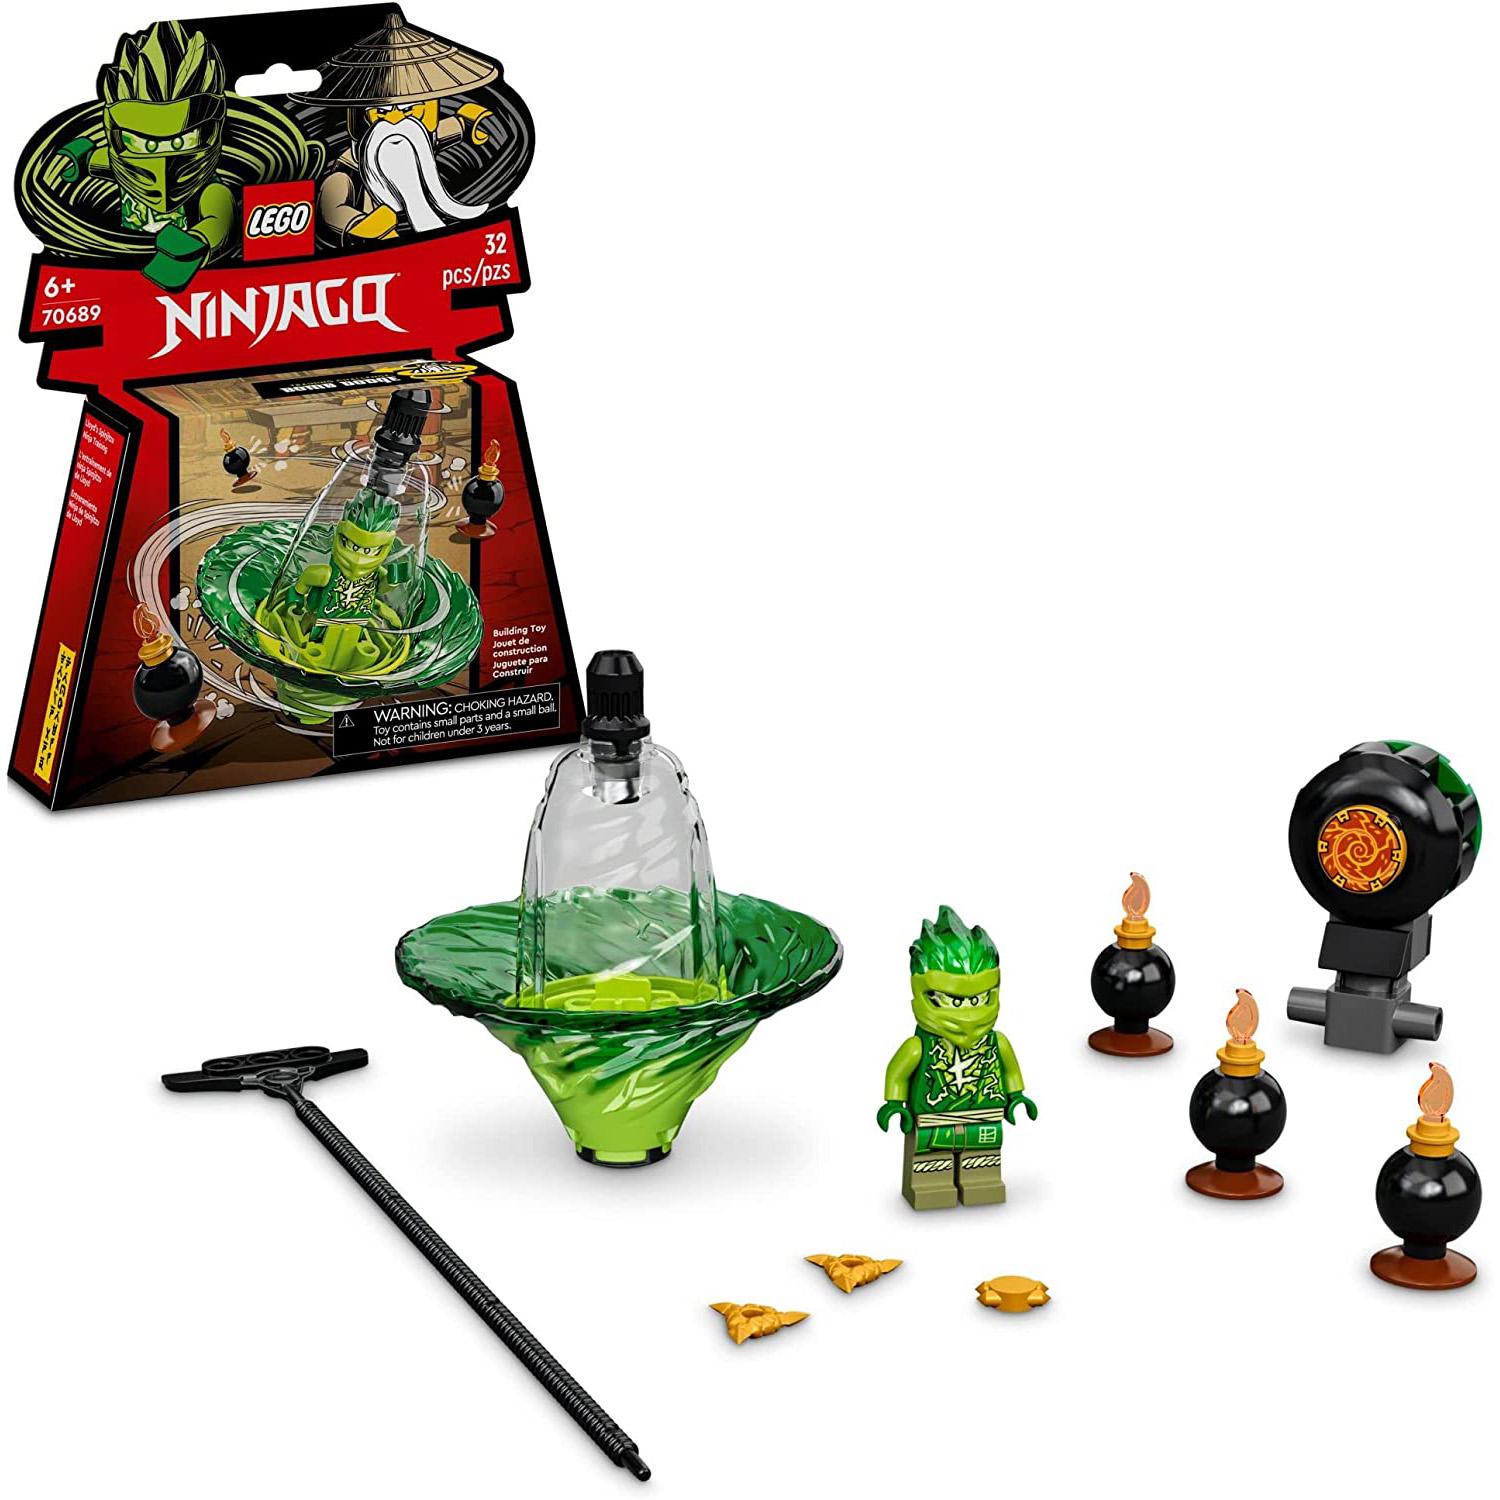 LEGO Ninjago Spinjitzu Ninja Training Spinning Toy Building Kit for $7.99